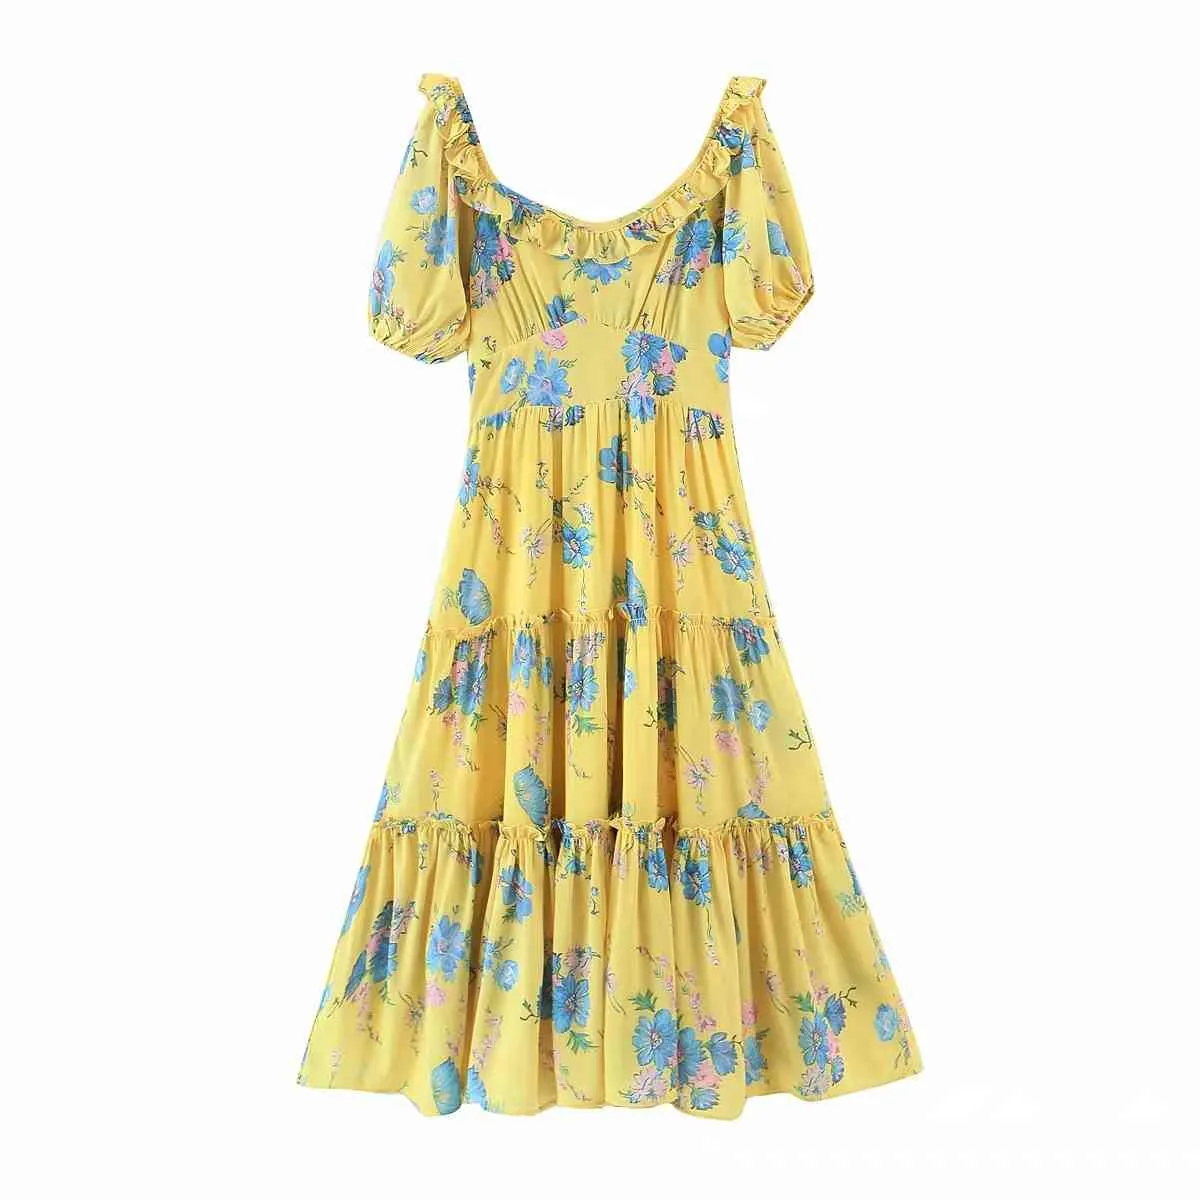 Foridol Wzburzyć Rękaw Puffowy Kwiatowy Drukujący Sukienka Dla Kobiet Vintage Lato Maxi Długa Dress Yellow Boho A-Line Beach Hooliday Dress 210415